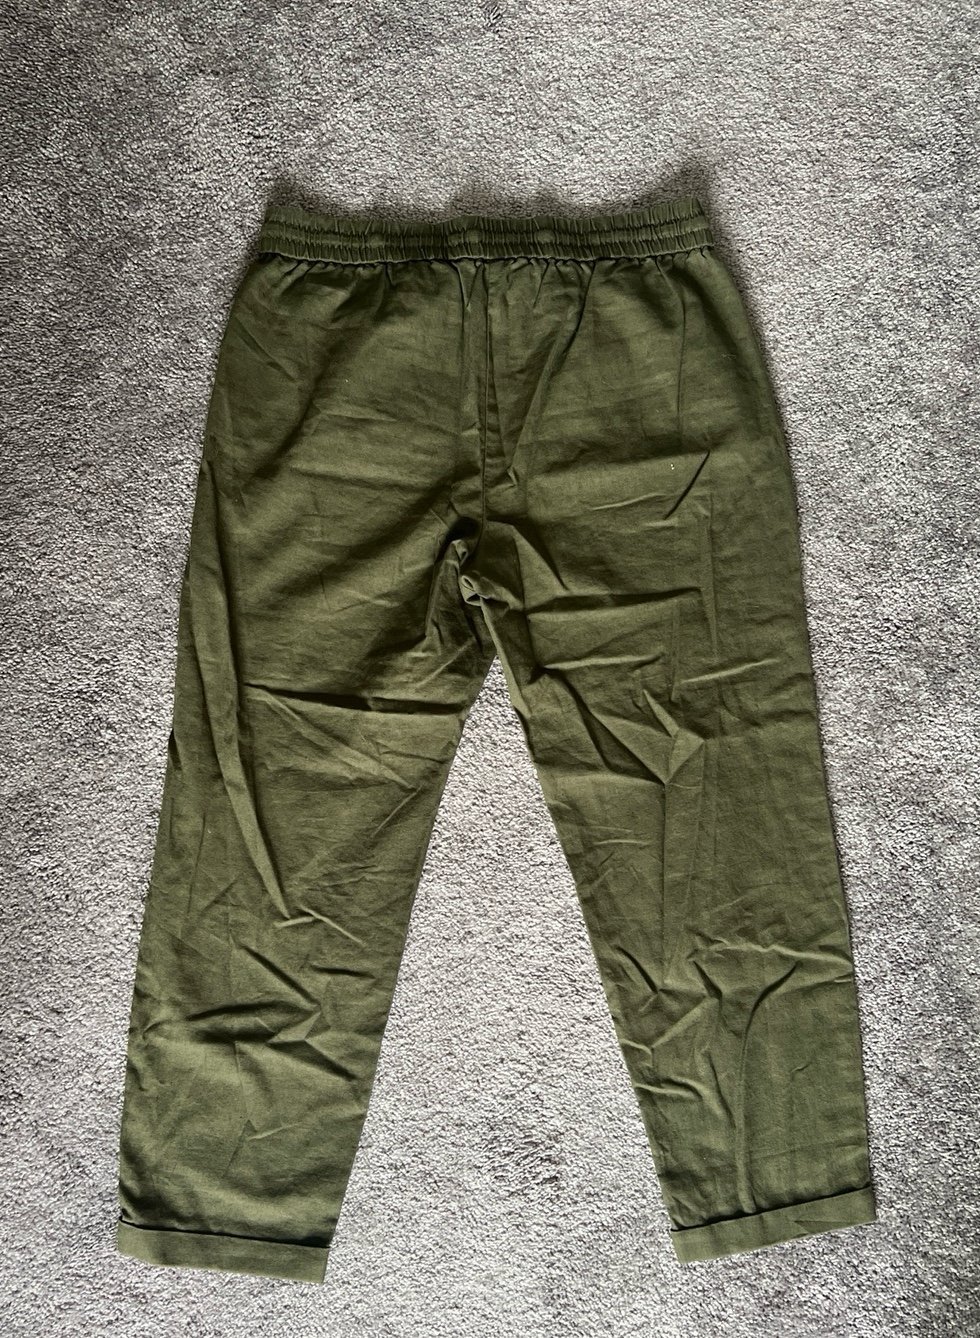 Cheap J. Crew Green Linen Pants ftFil9Ves Online Shop